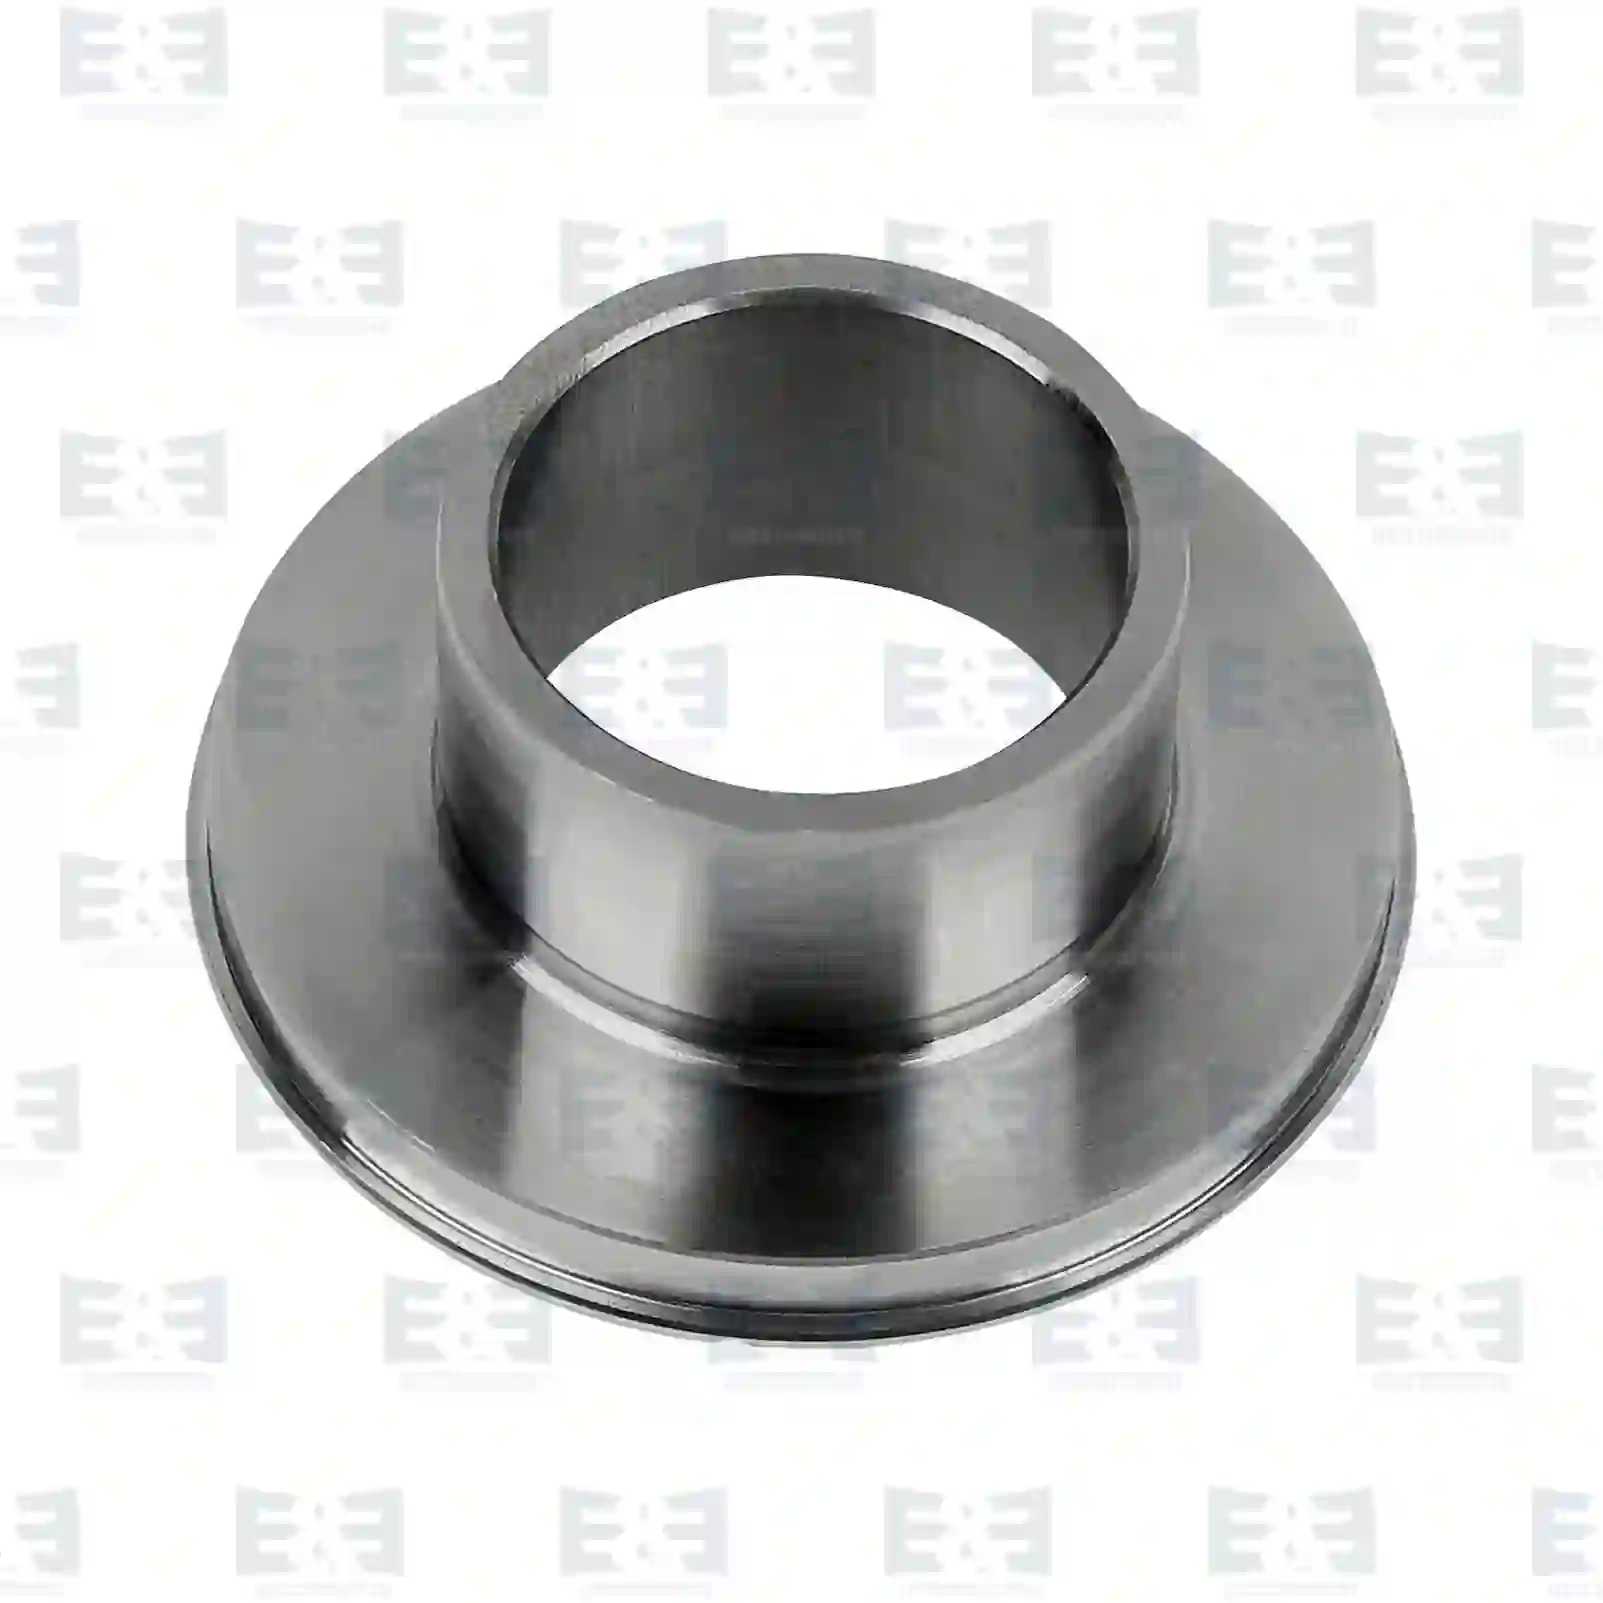  Plain bearing || E&E Truck Spare Parts | Truck Spare Parts, Auotomotive Spare Parts